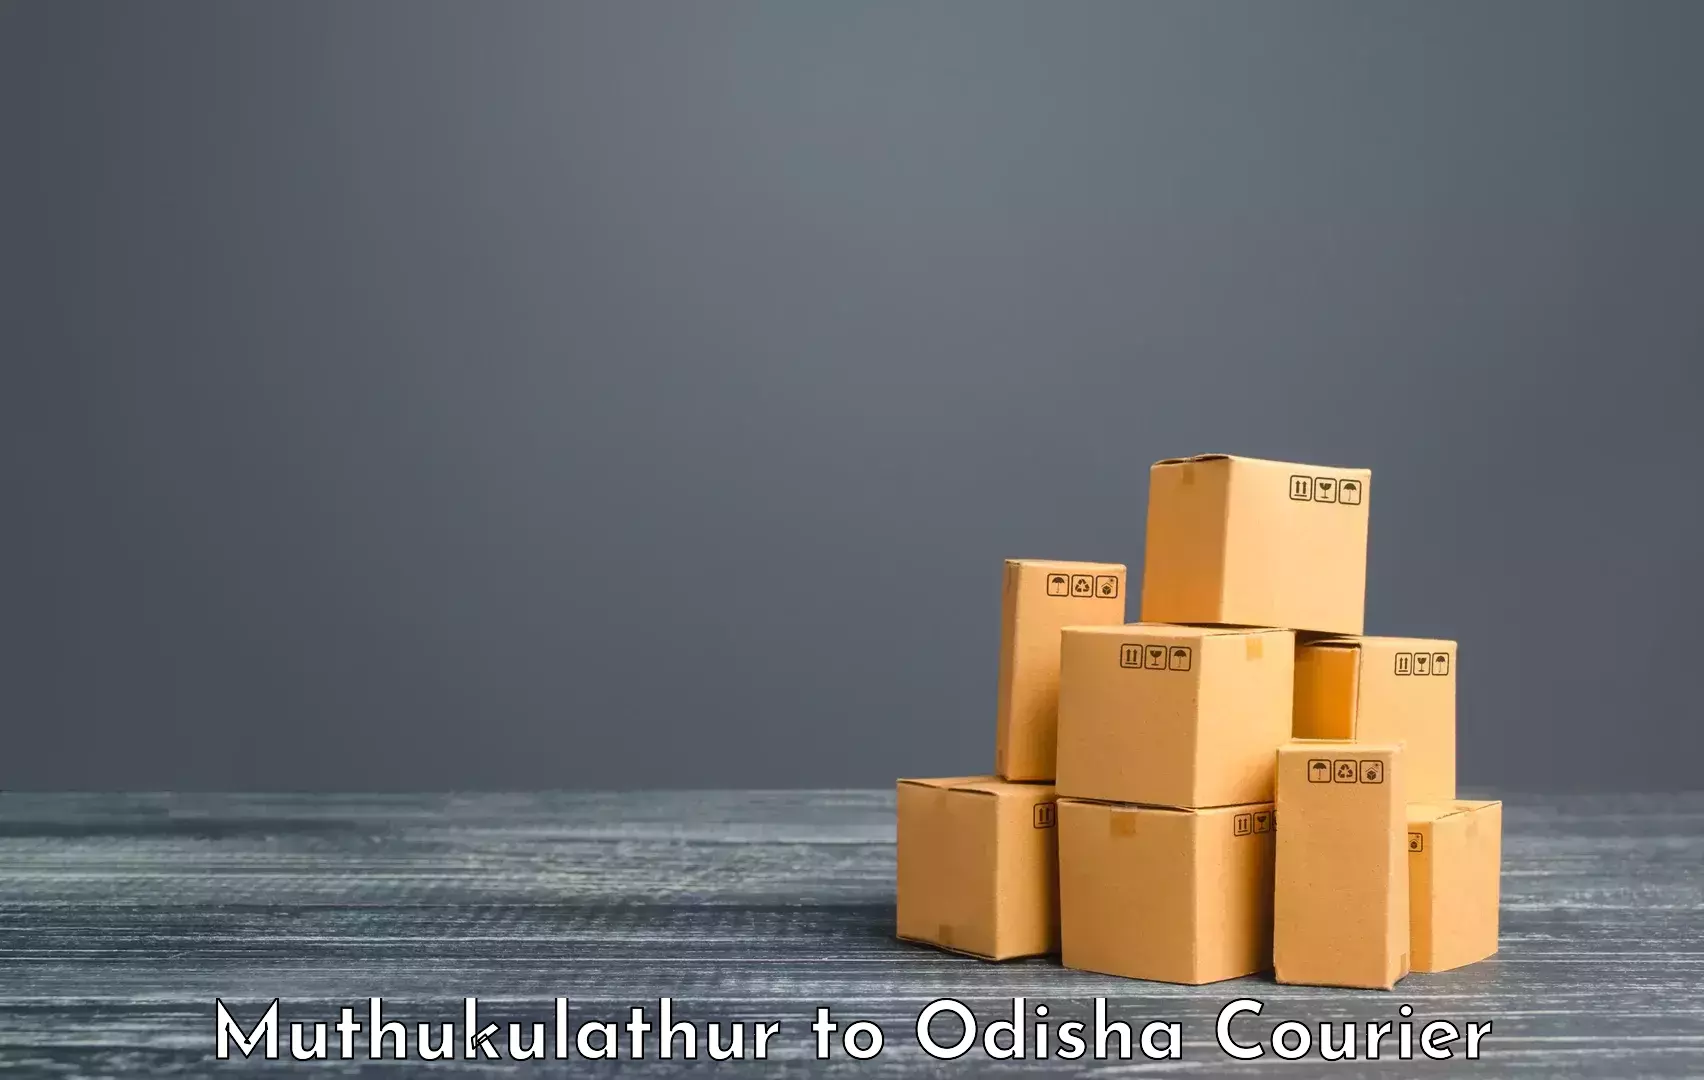 Luggage transfer service Muthukulathur to Odisha